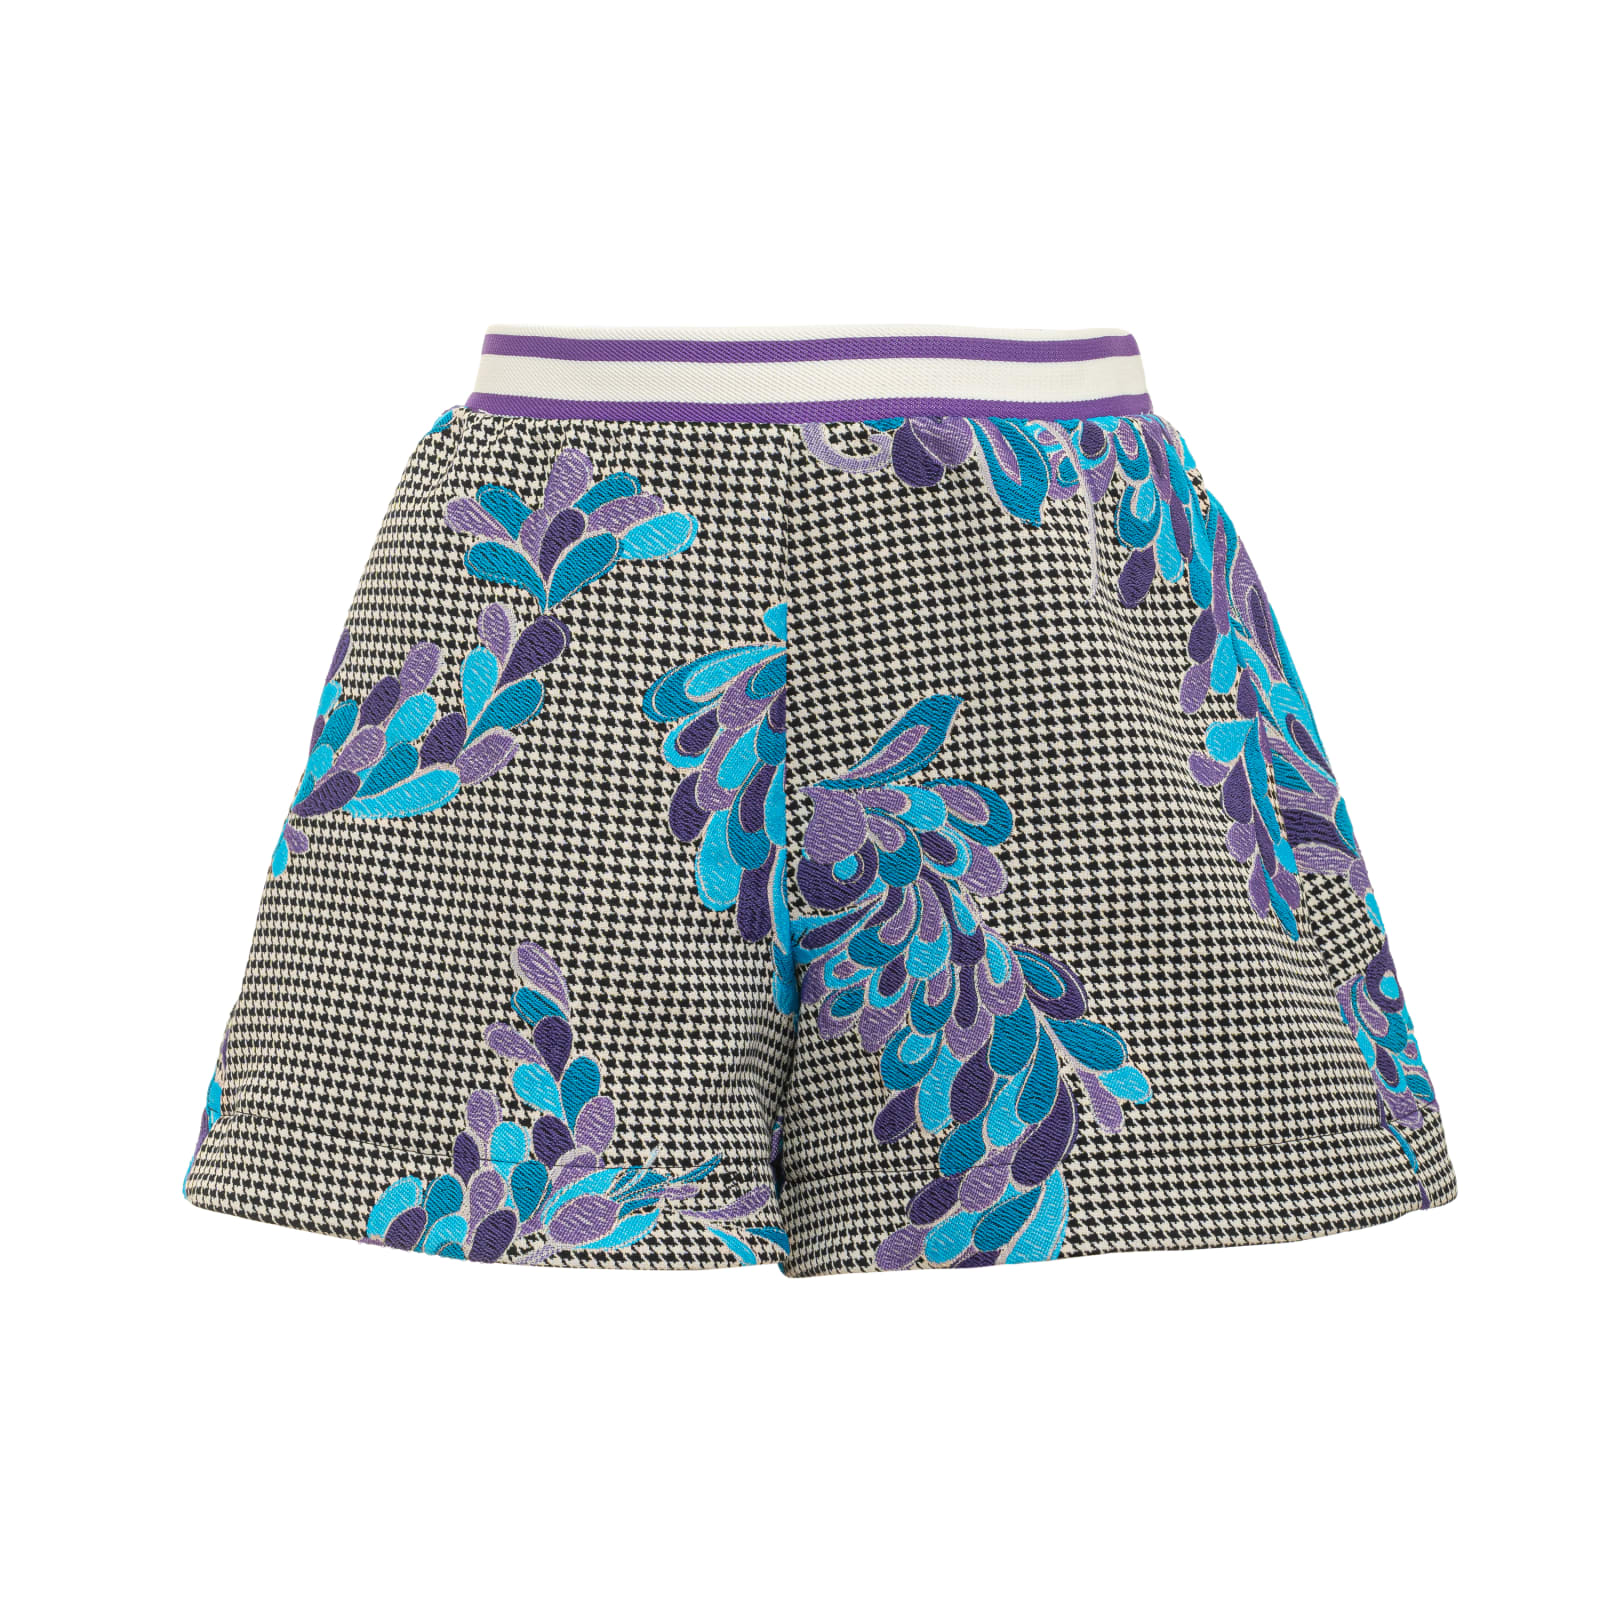 Emilio Pucci Kids Shorts With Pied-de-poule Motif And Floral Pattern